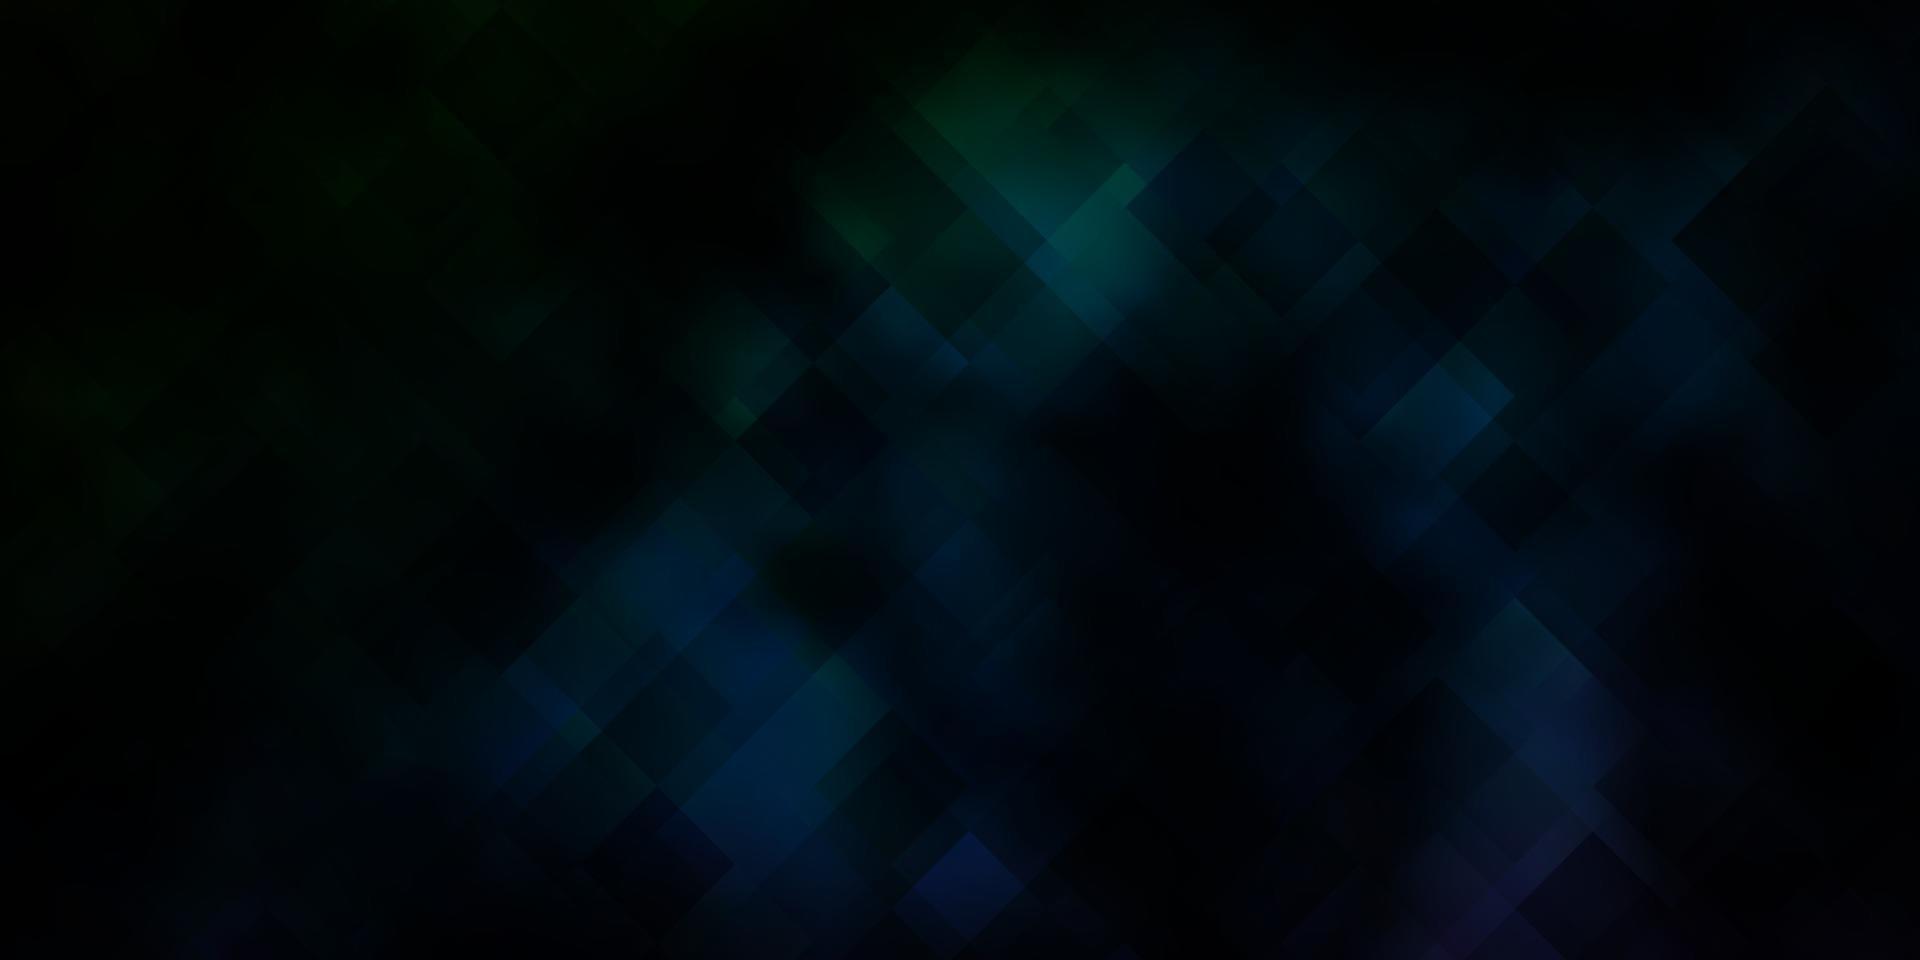 mörkblå, grön vektorbakgrund med rektanglar. vektor